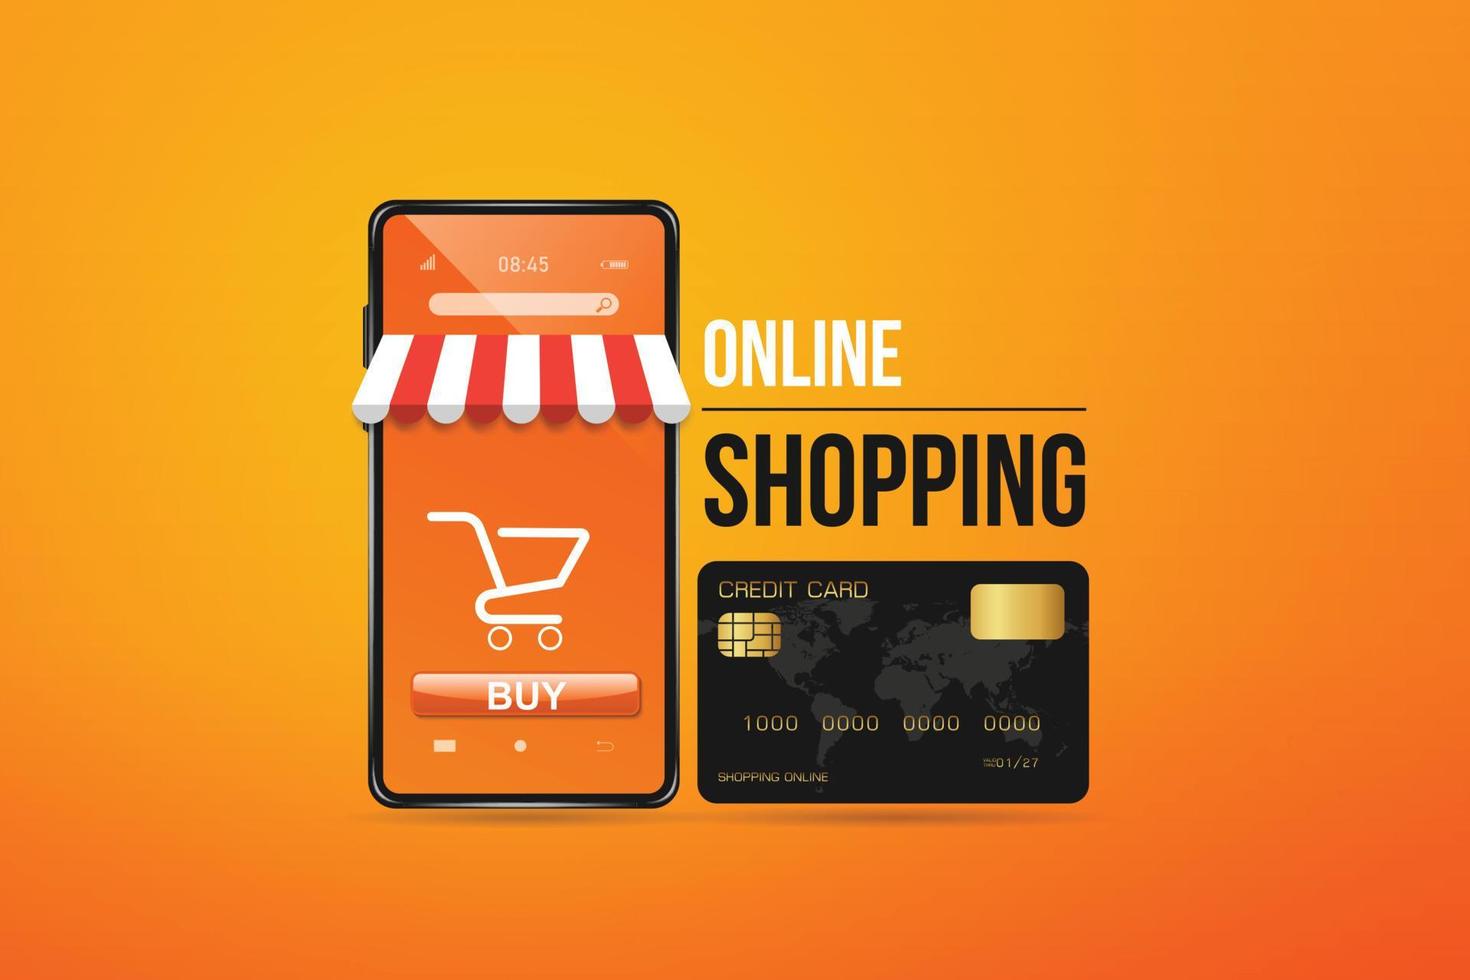 tarjeta de crédito negra y un teléfono inteligente que parece una tienda en línea. con símbolo de carrito de compras para compras en línea y diseño de concepto de compras en línea, vector sobre fondo naranja.